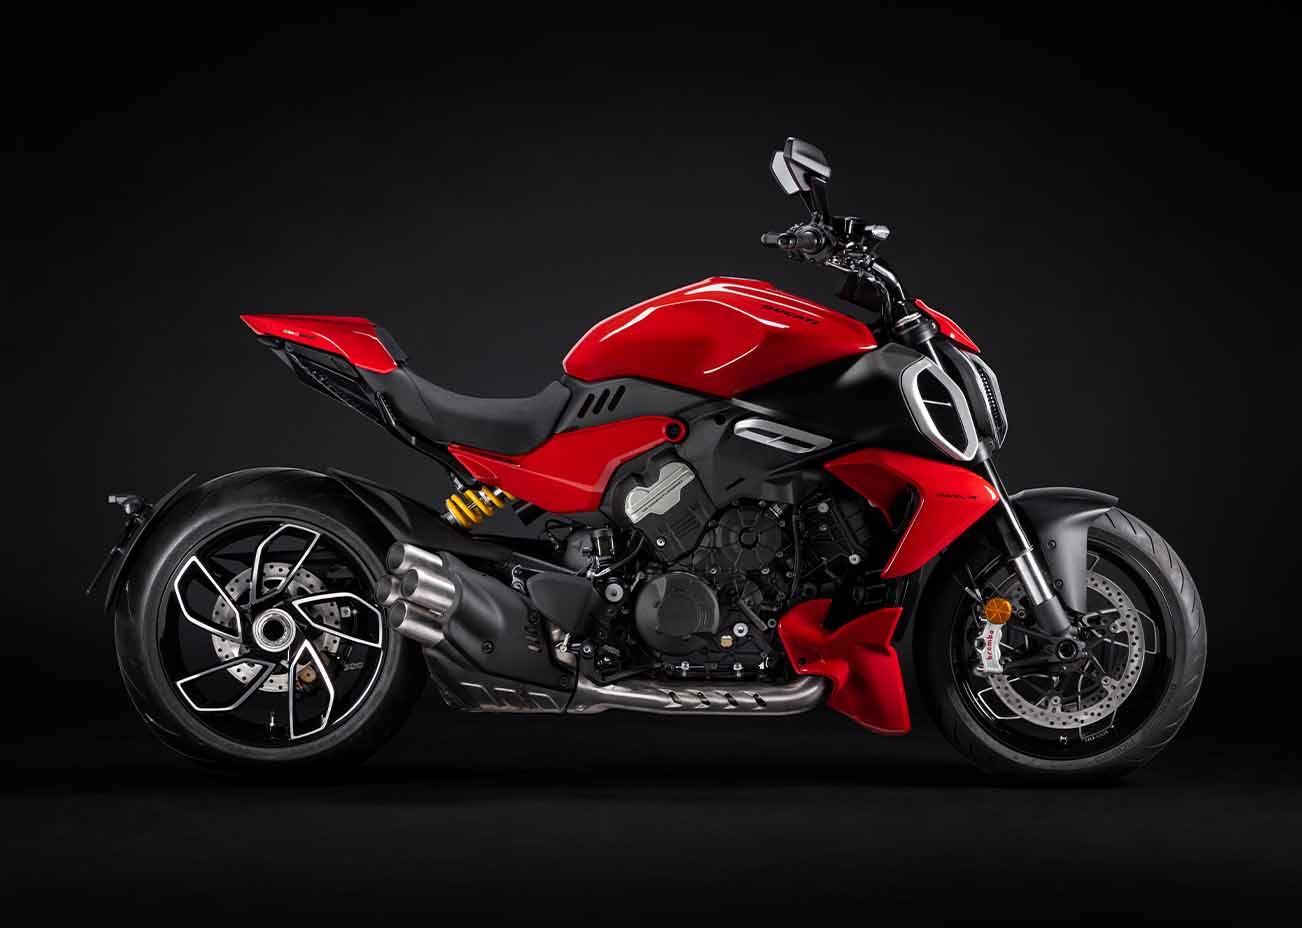 The all-new Ducati Diavel V4